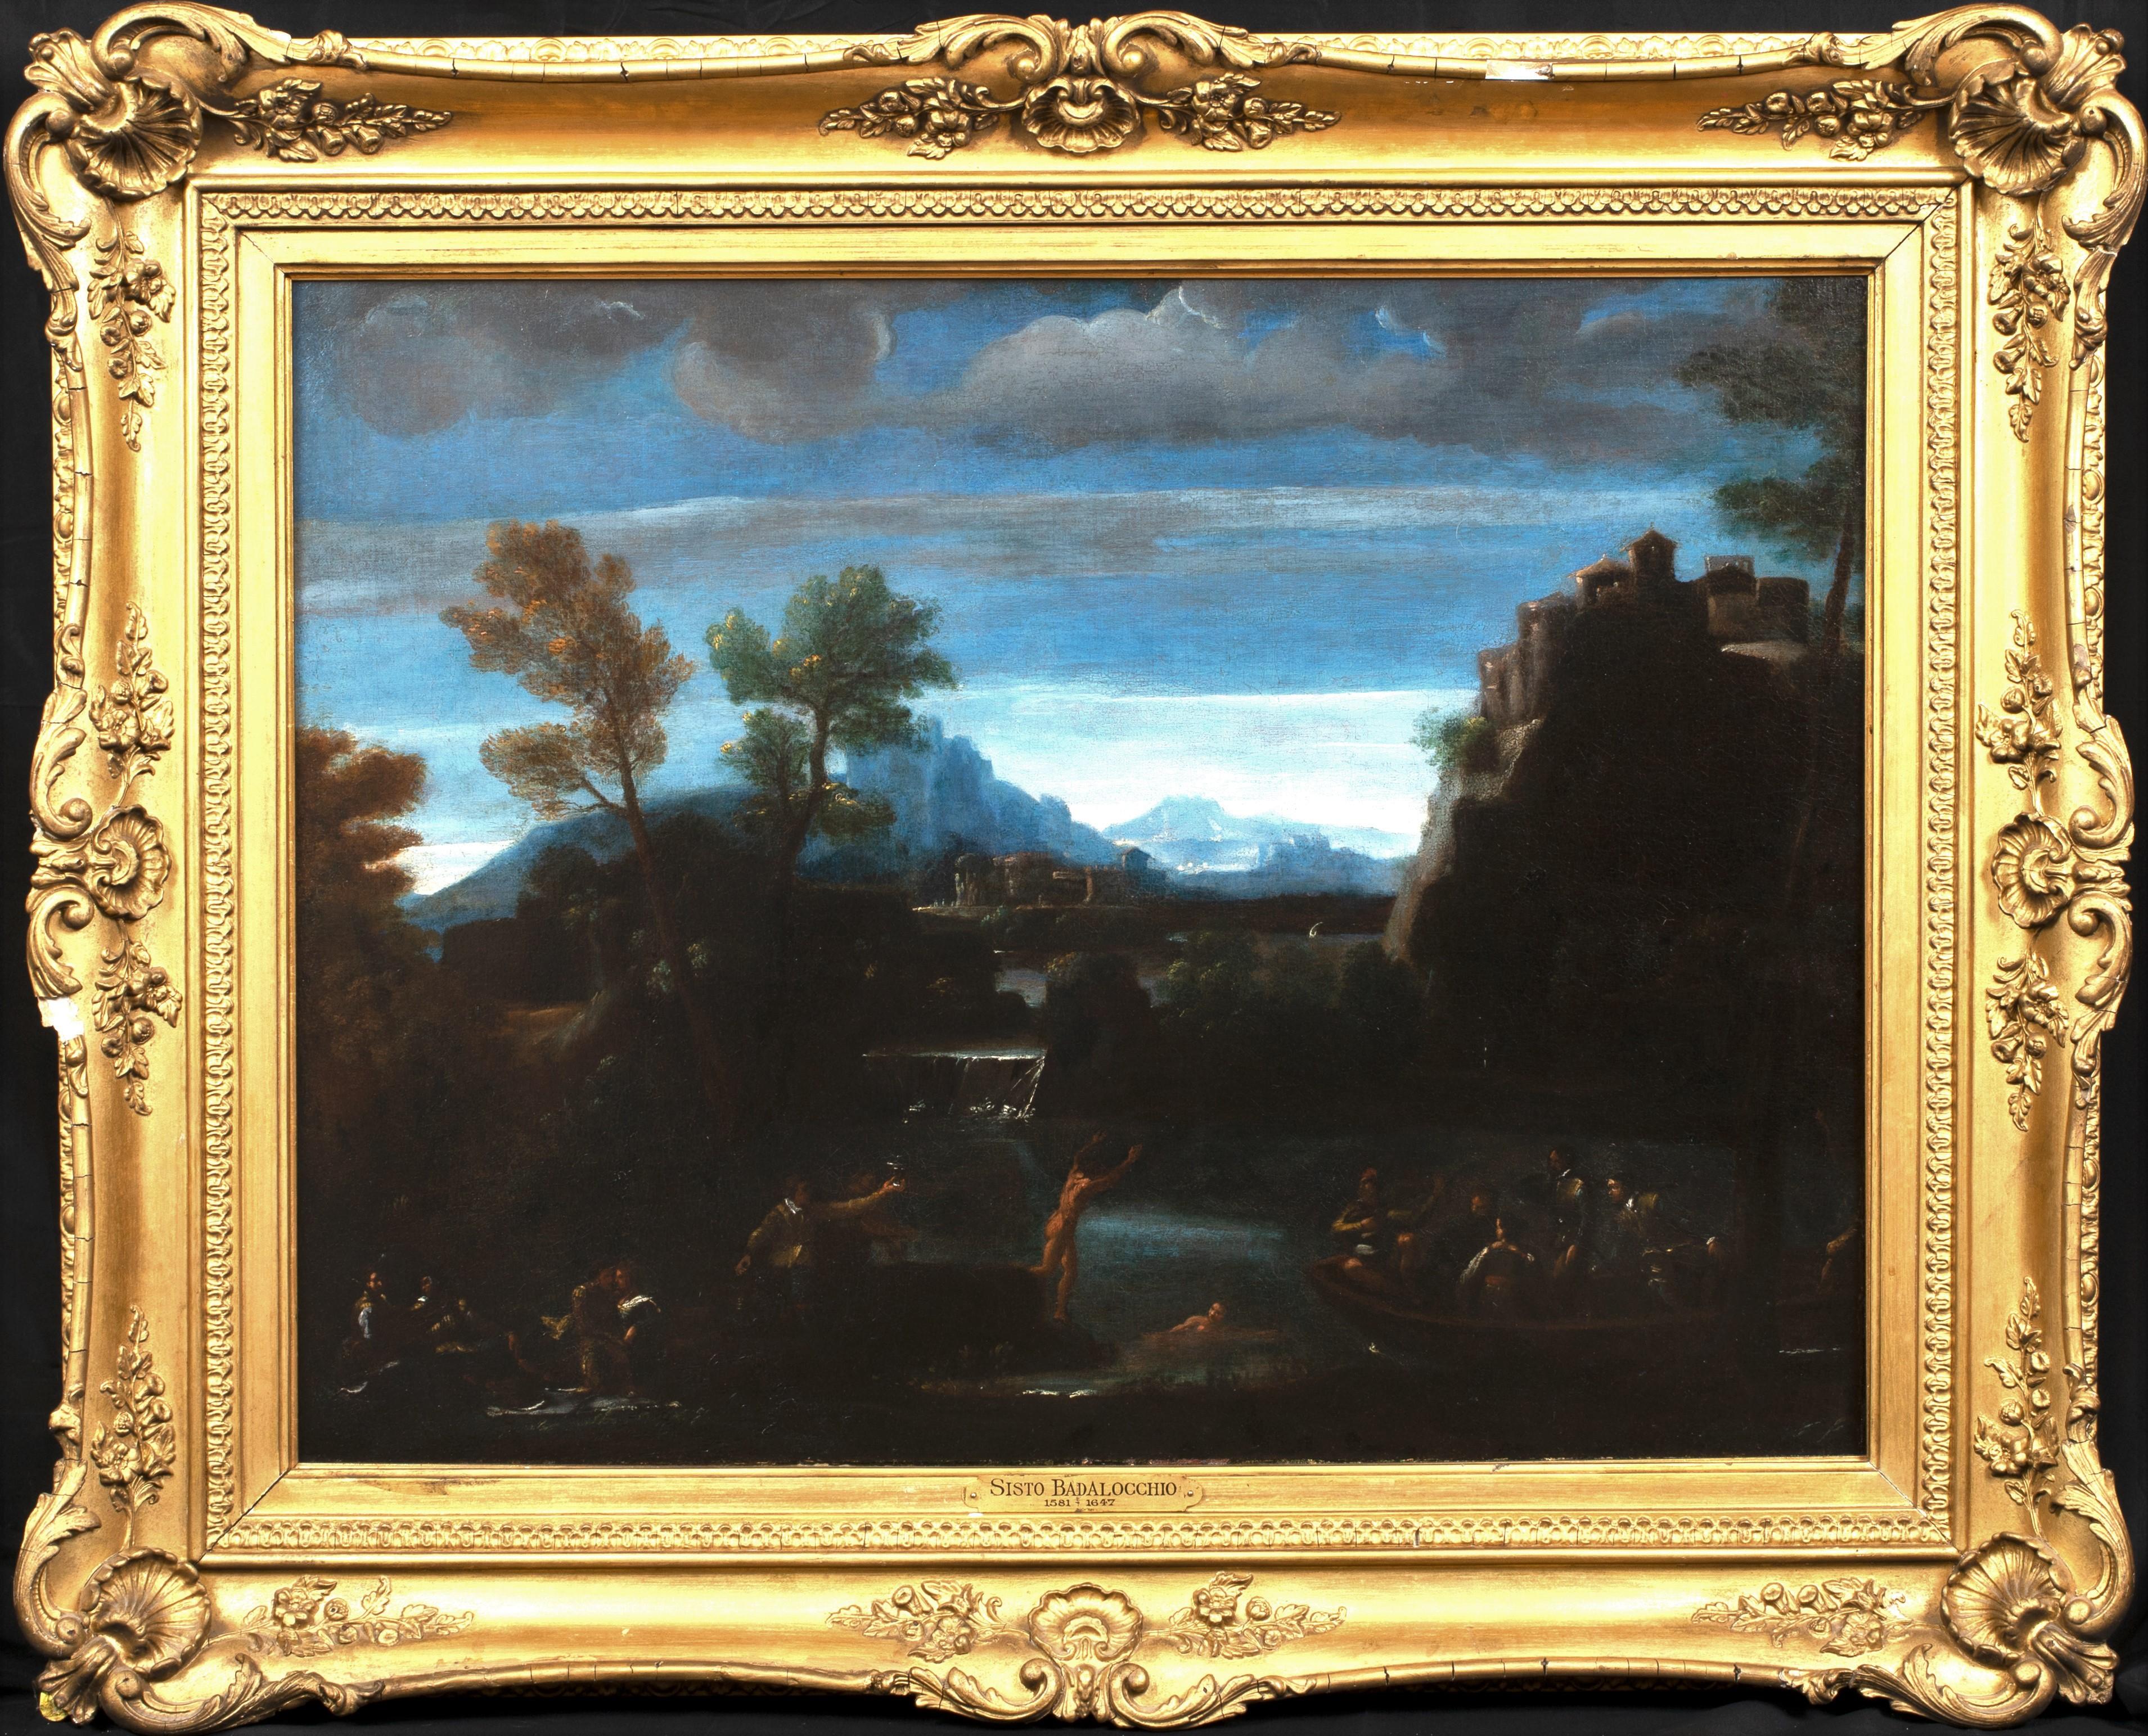 Unknown Portrait Painting - Bathers On A Mountainous River Landscape, 17th Century